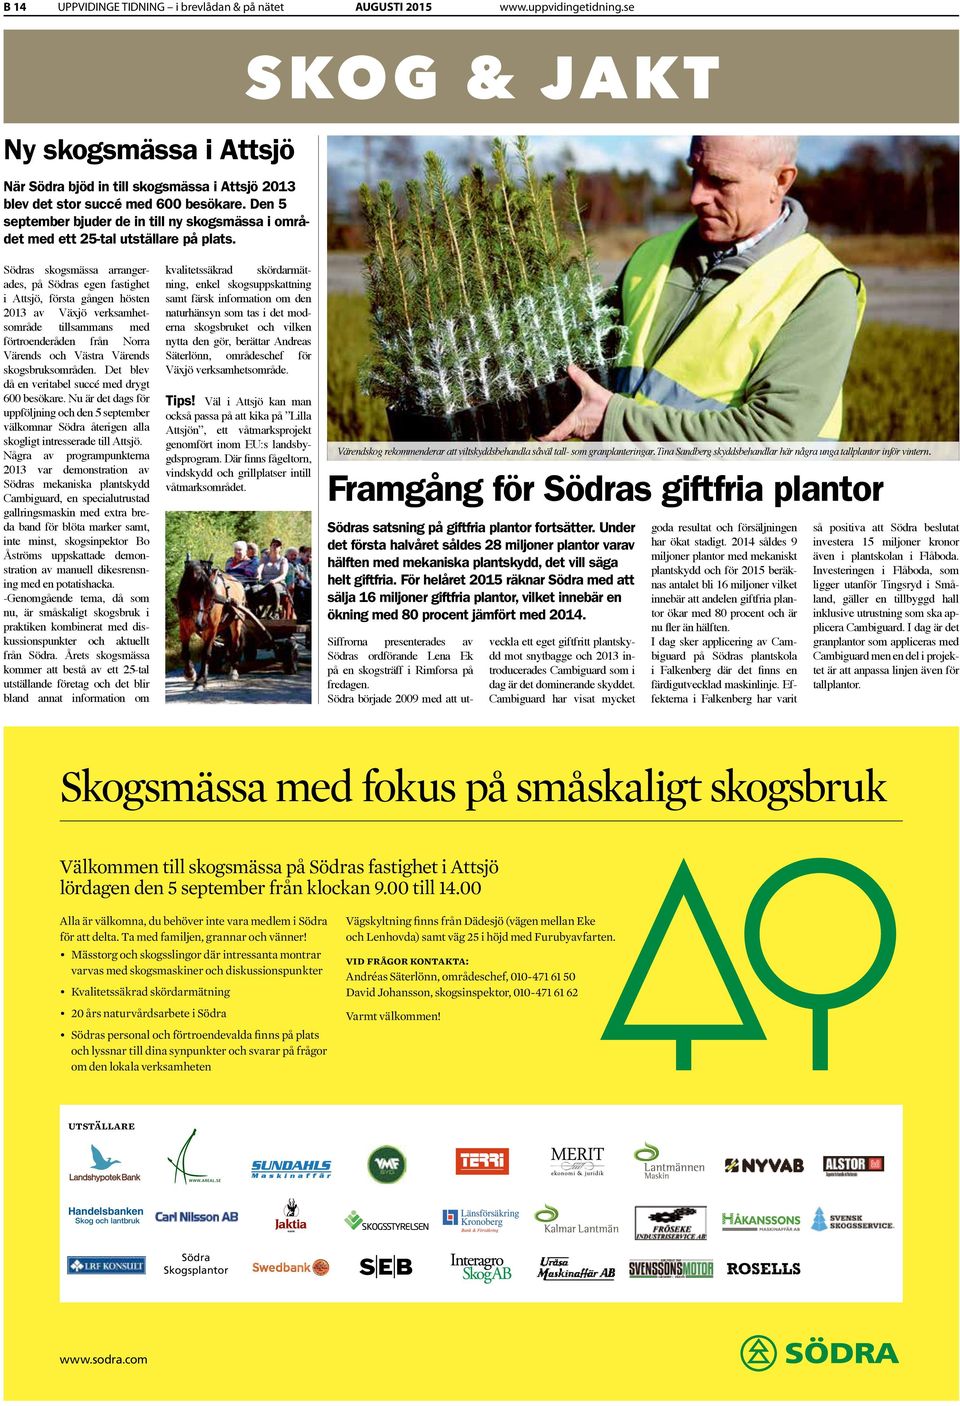 SKOG & JAKT Södras skogsmässa arrangerades, på Södras egen fastighet i Attsjö, första gången hösten 2013 av Växjö verksamhetsområde tillsammans med förtroenderåden från Norra Värends och Västra